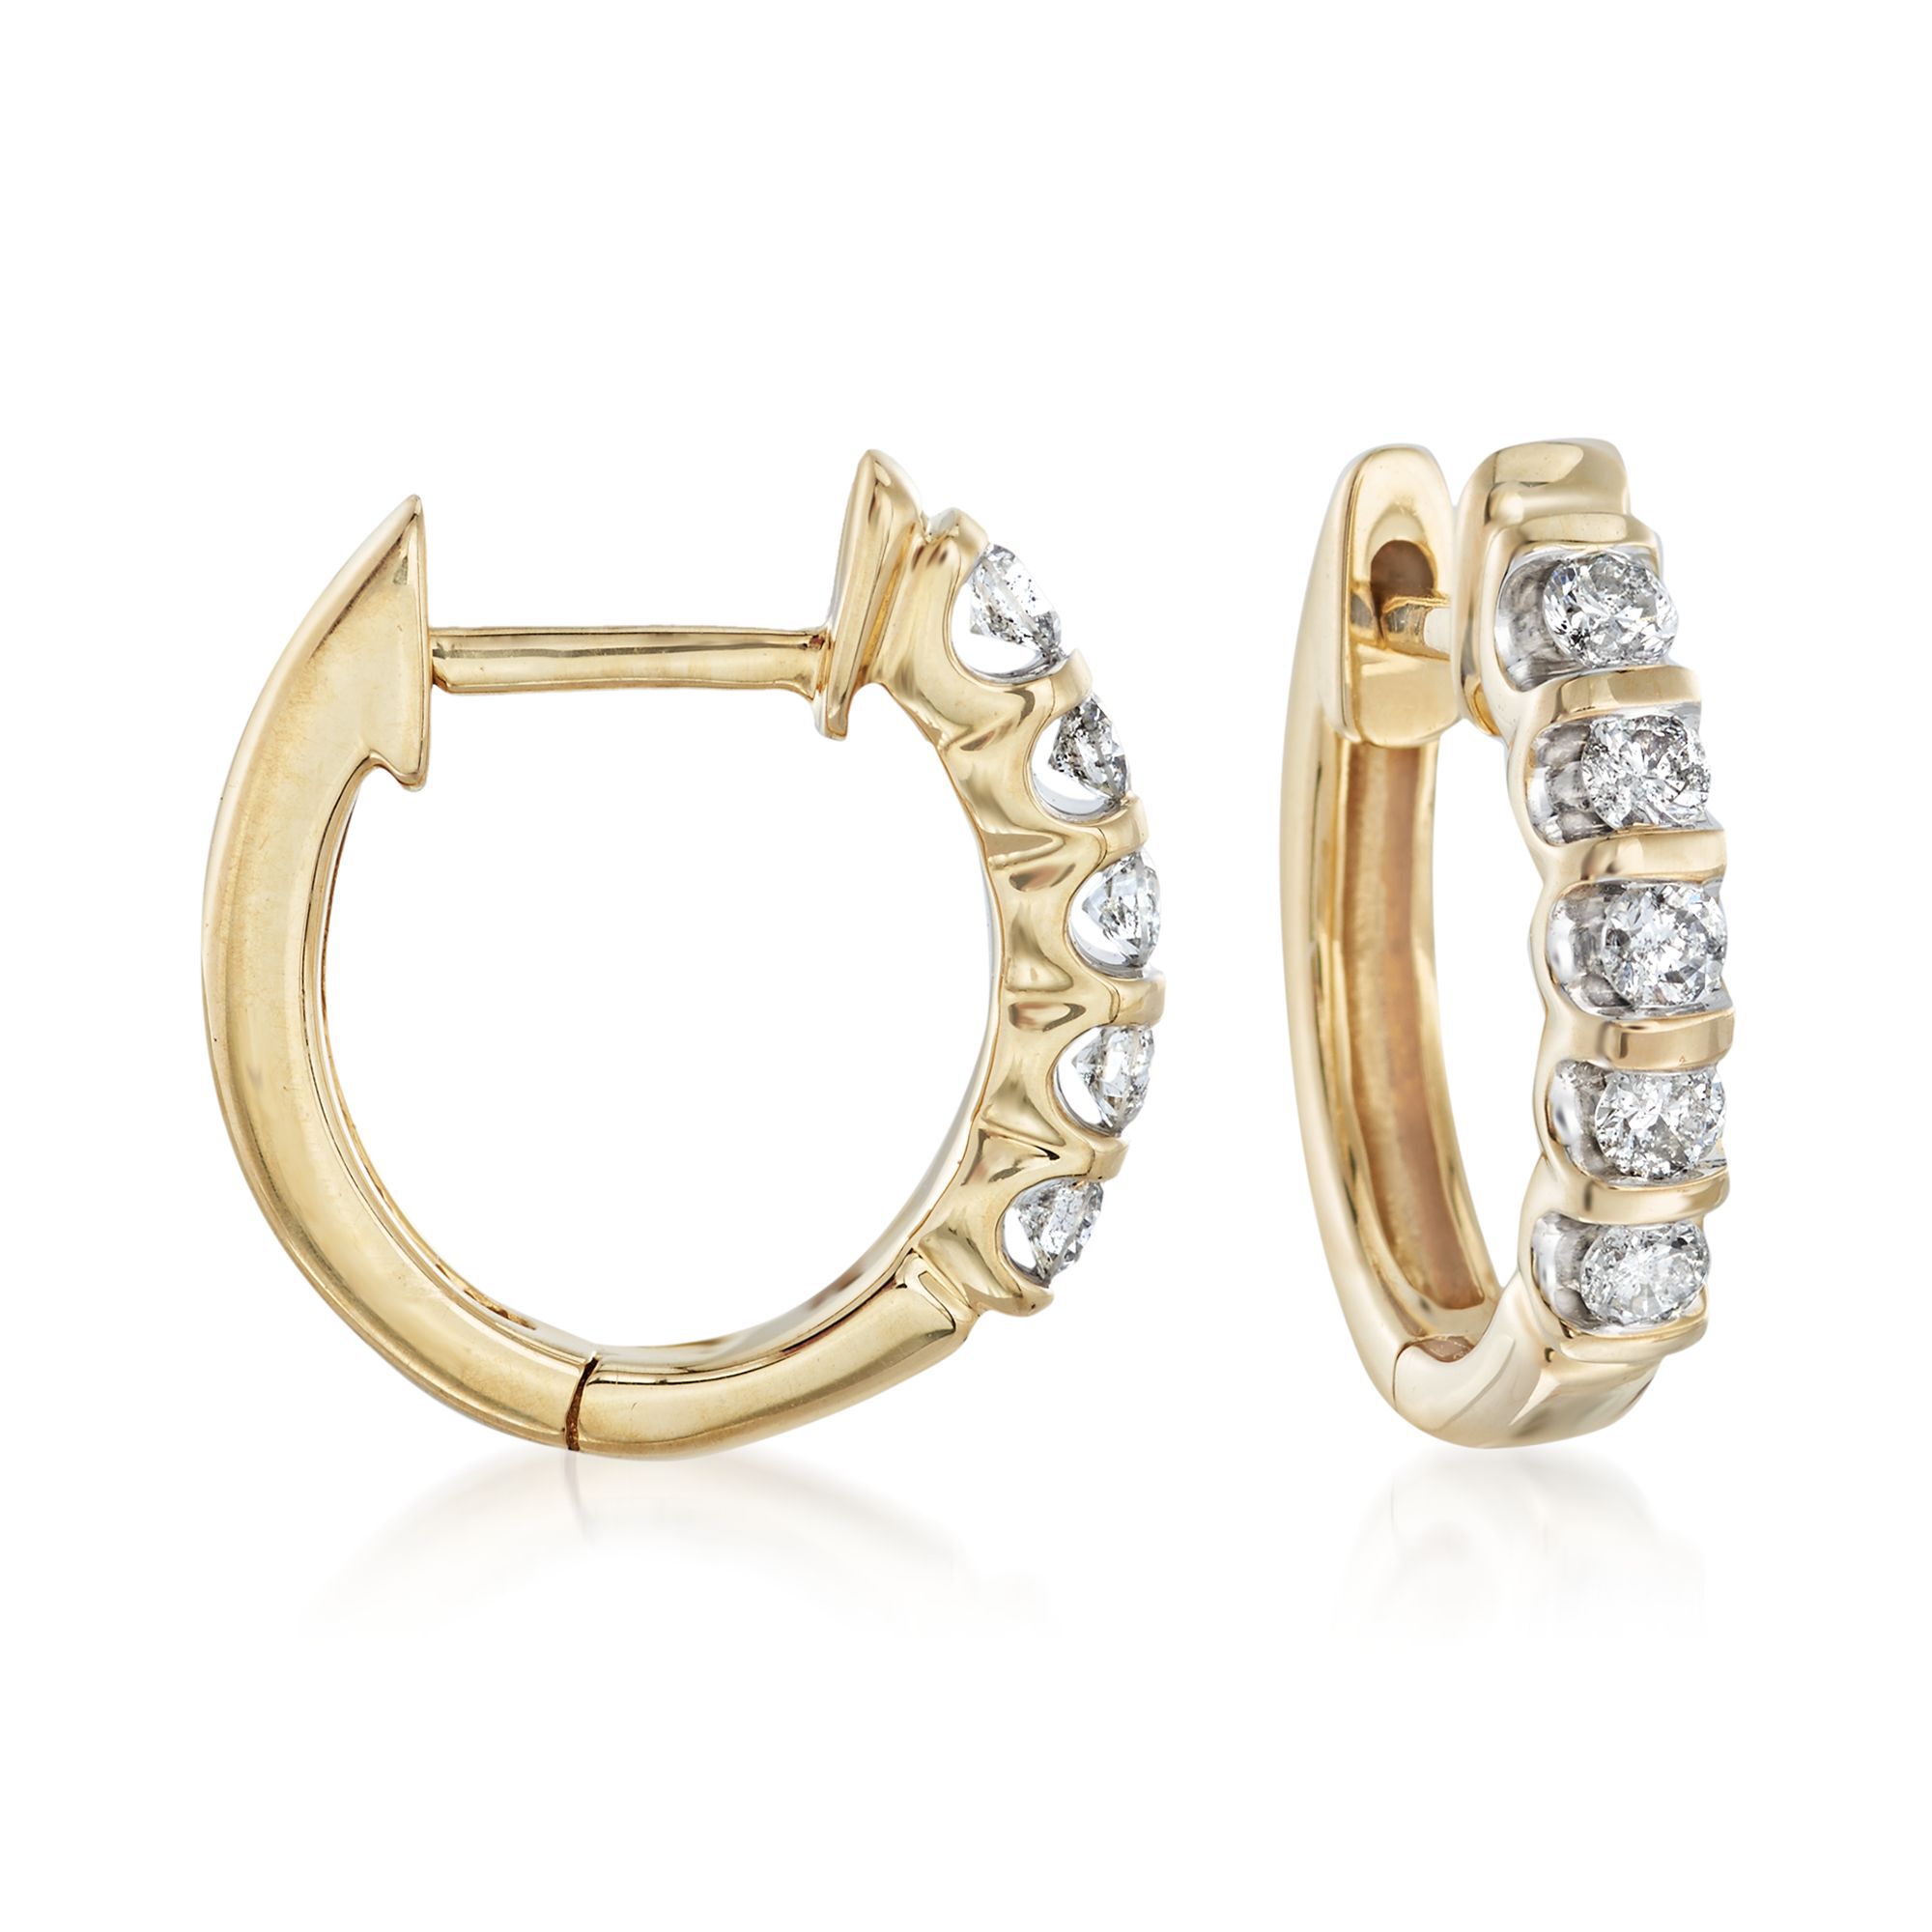 Double Row Diamond Hoop Earrings Wedding Bridal Jewelry Gift T